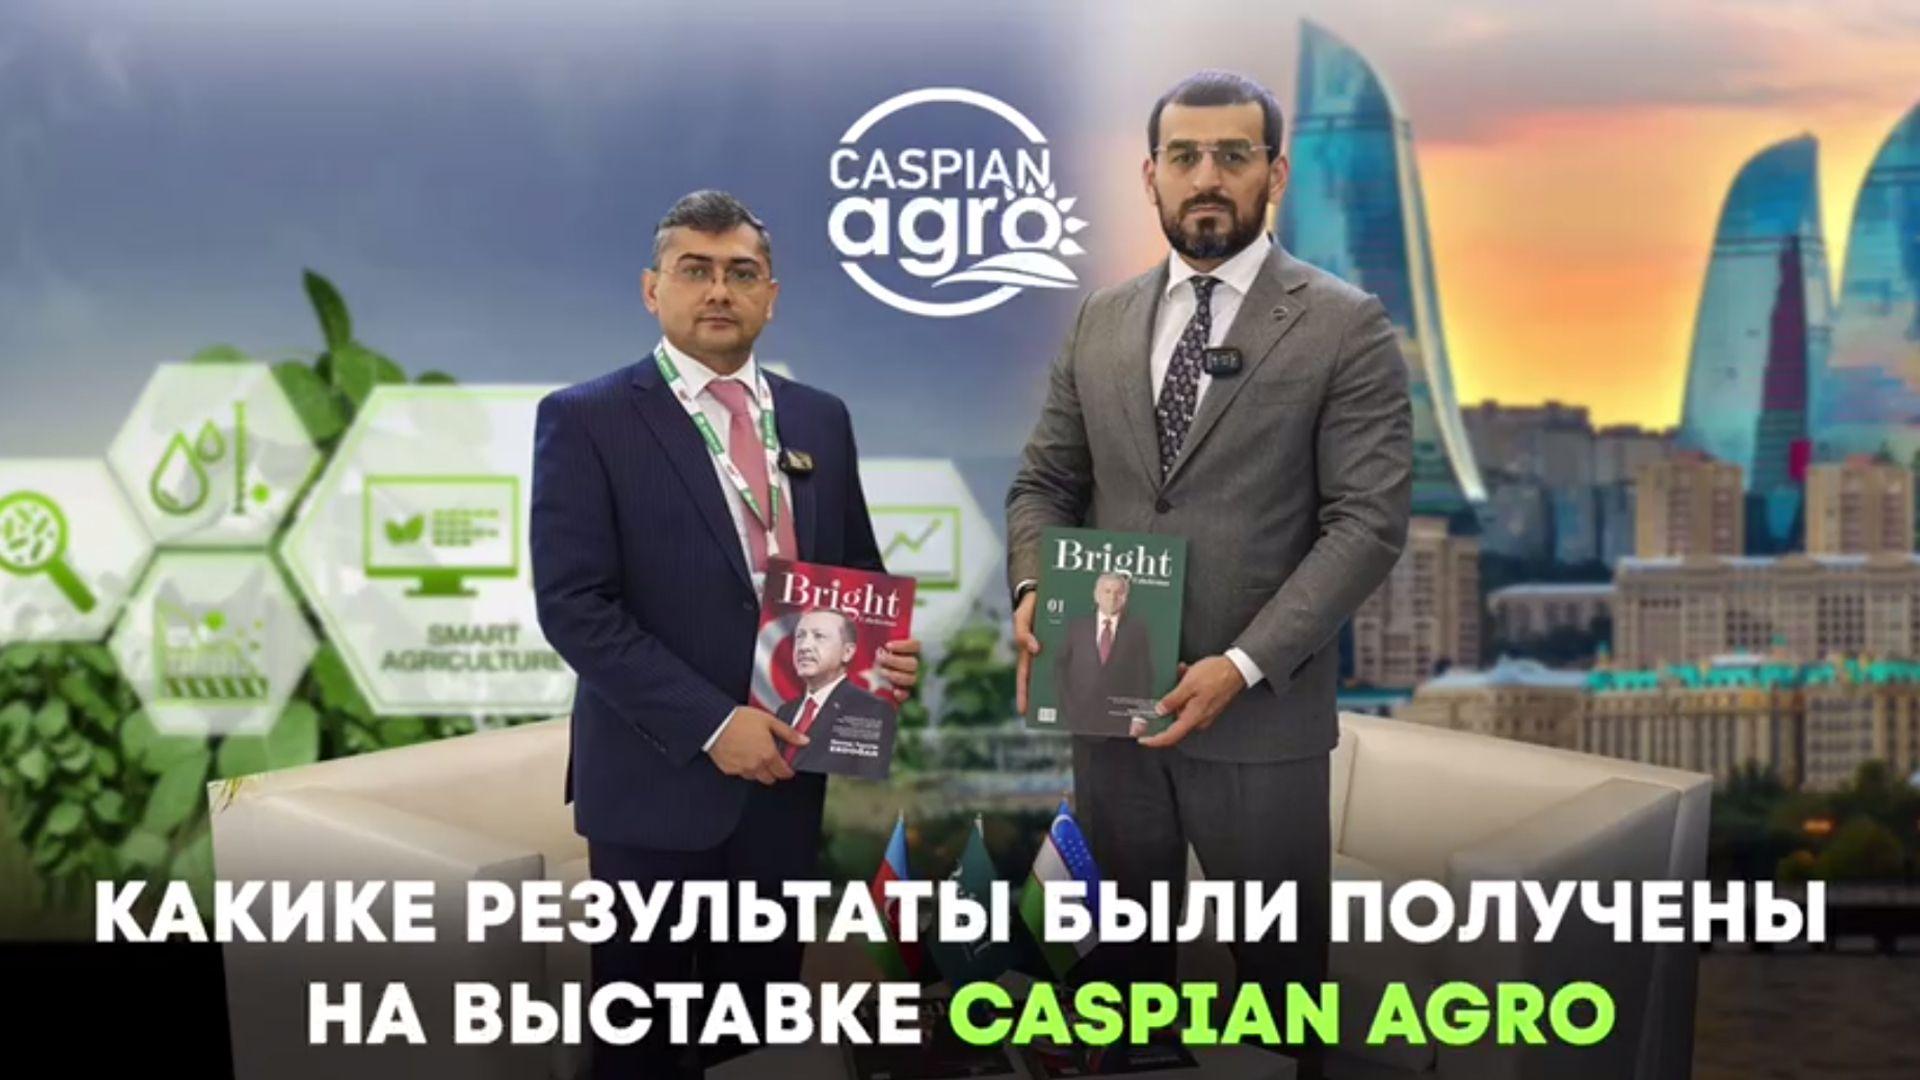 Какие результаты были получены на выставке Caspian Agro?